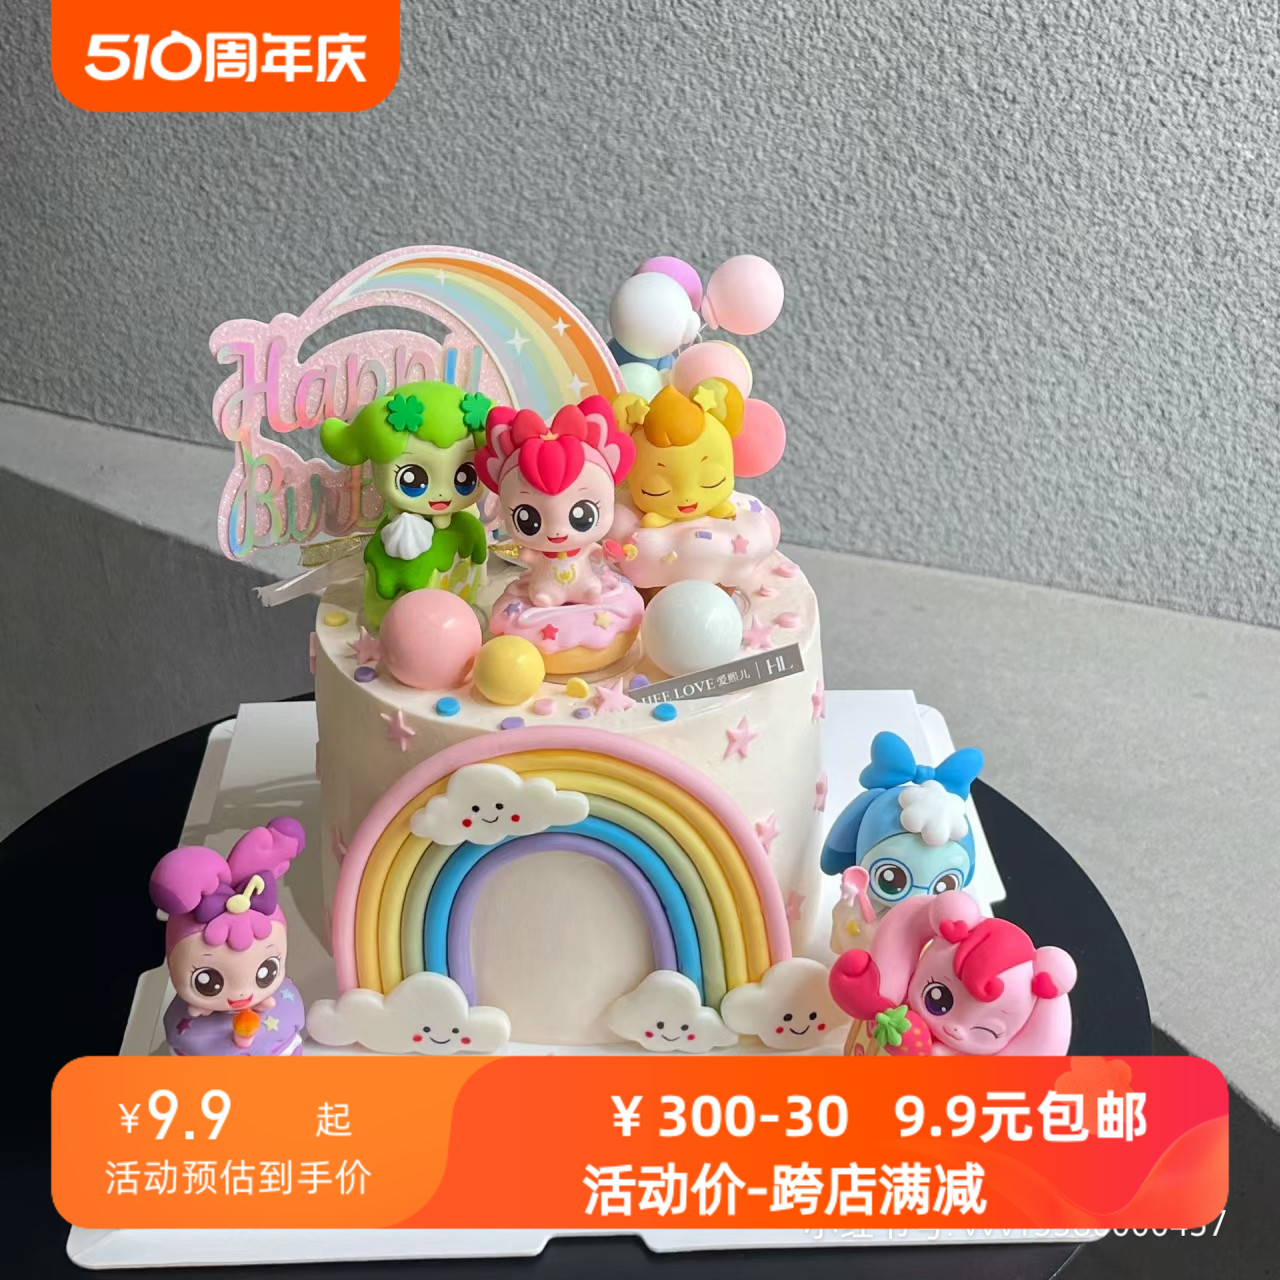 网红奇妙萌可女孩蛋糕装饰可爱卡通摆件彩虹气球儿童生日派对插件